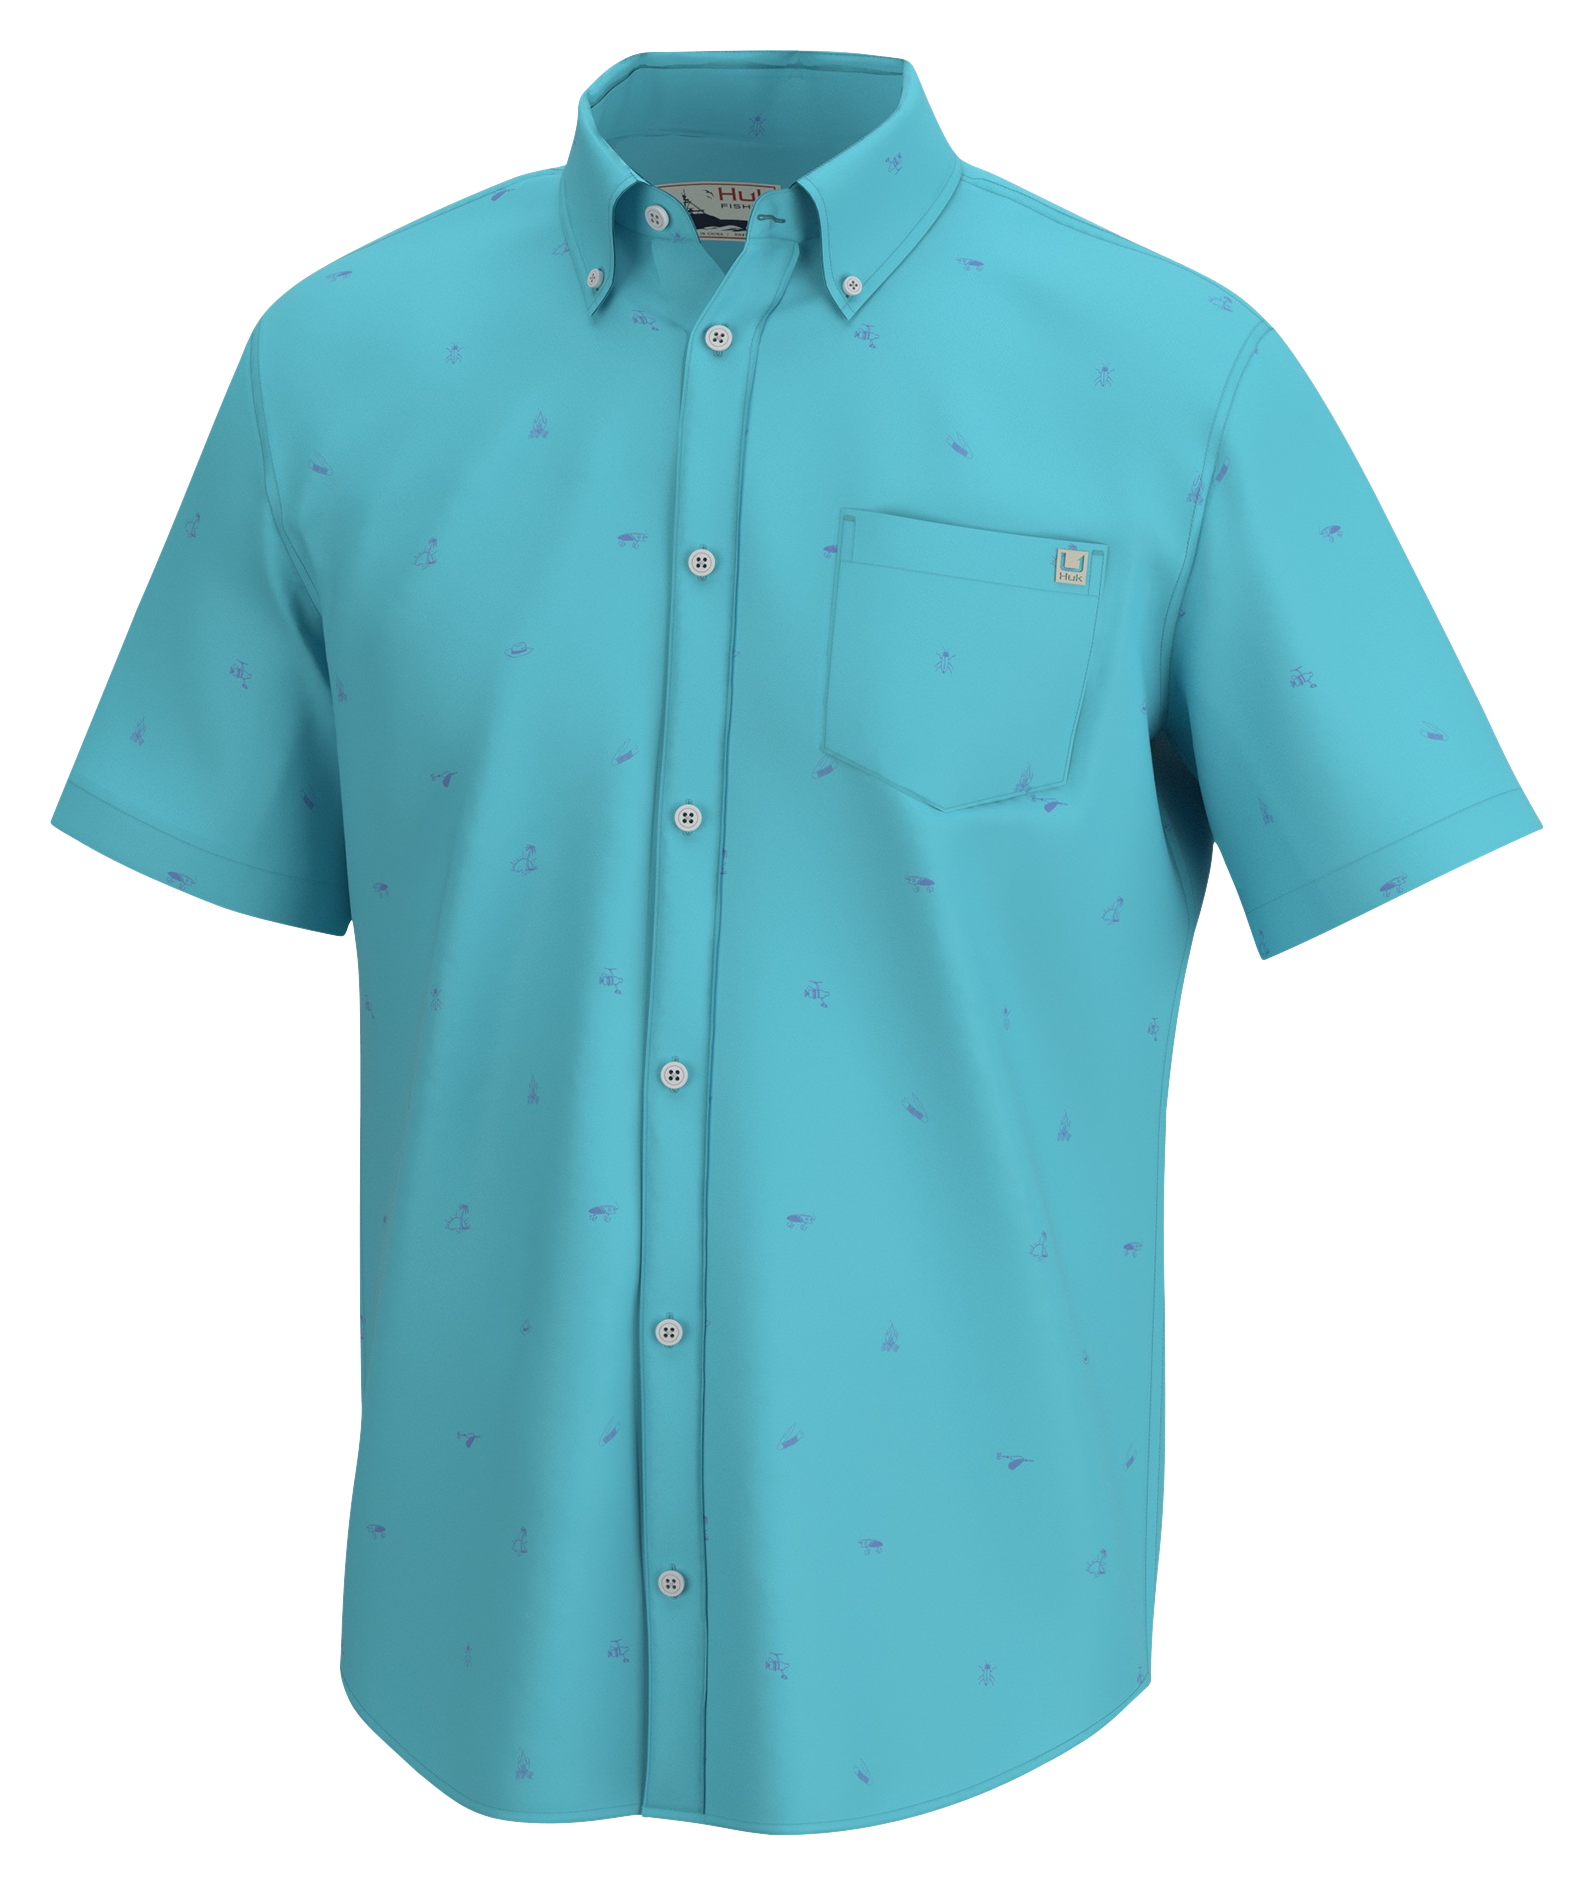 Huk Kona Scatter Short-Sleeve Button-Down Shirt for Men